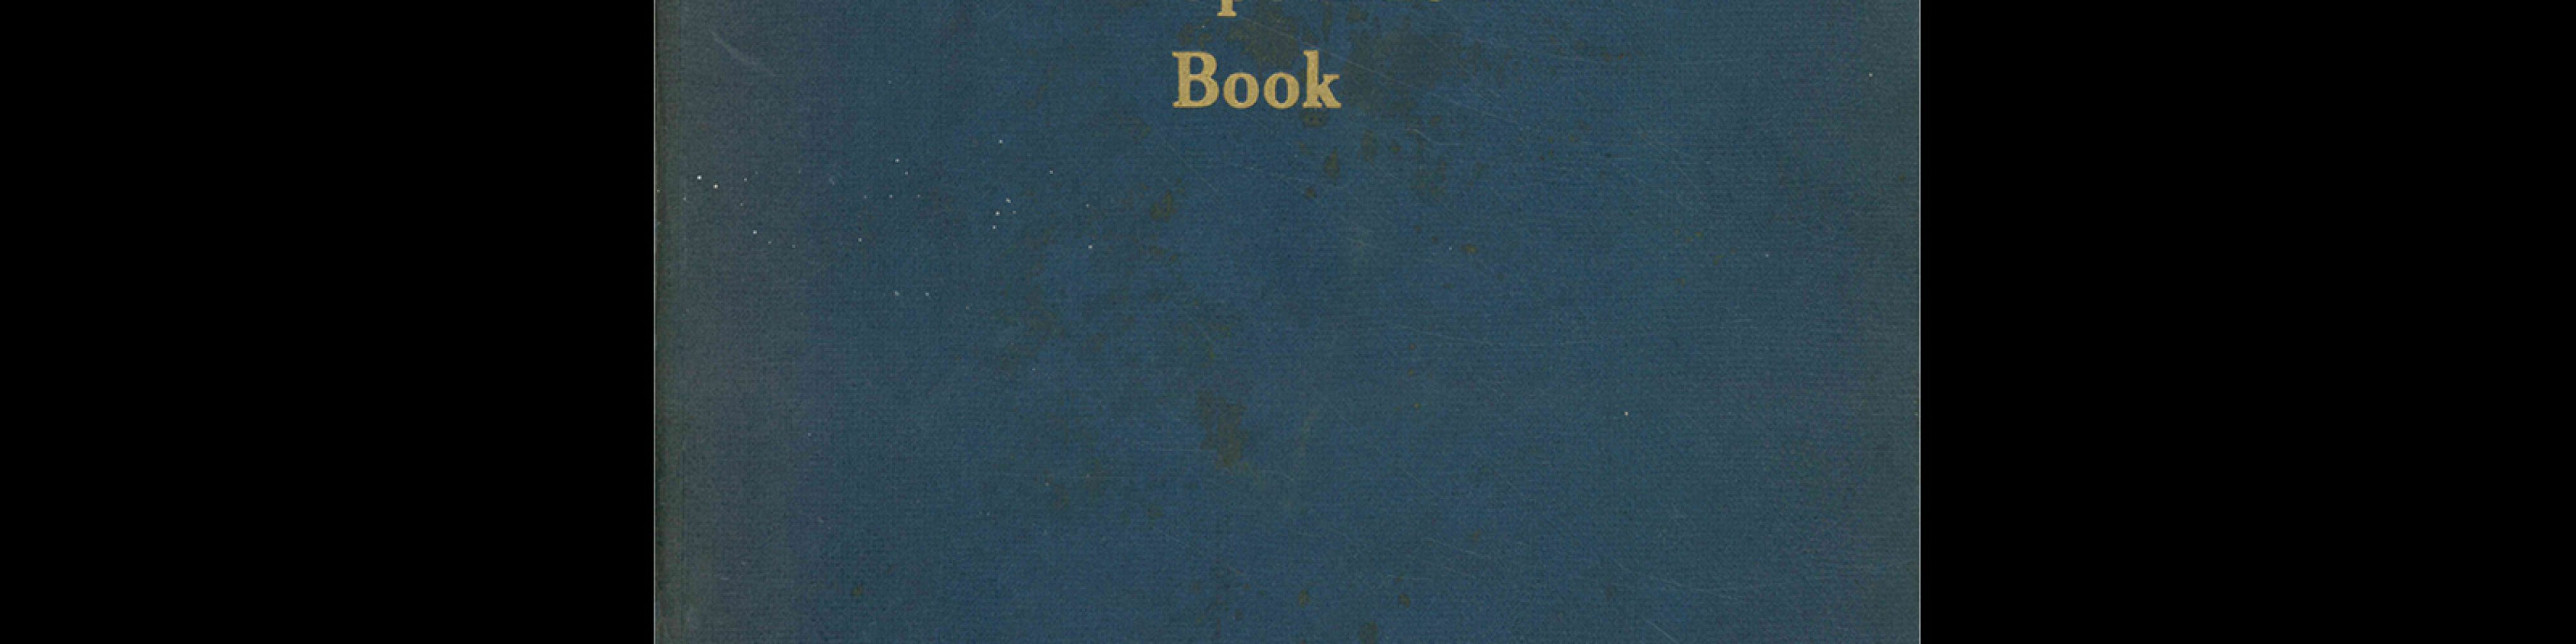 Type specimen book of Typefoundry Amsterdam, 1960